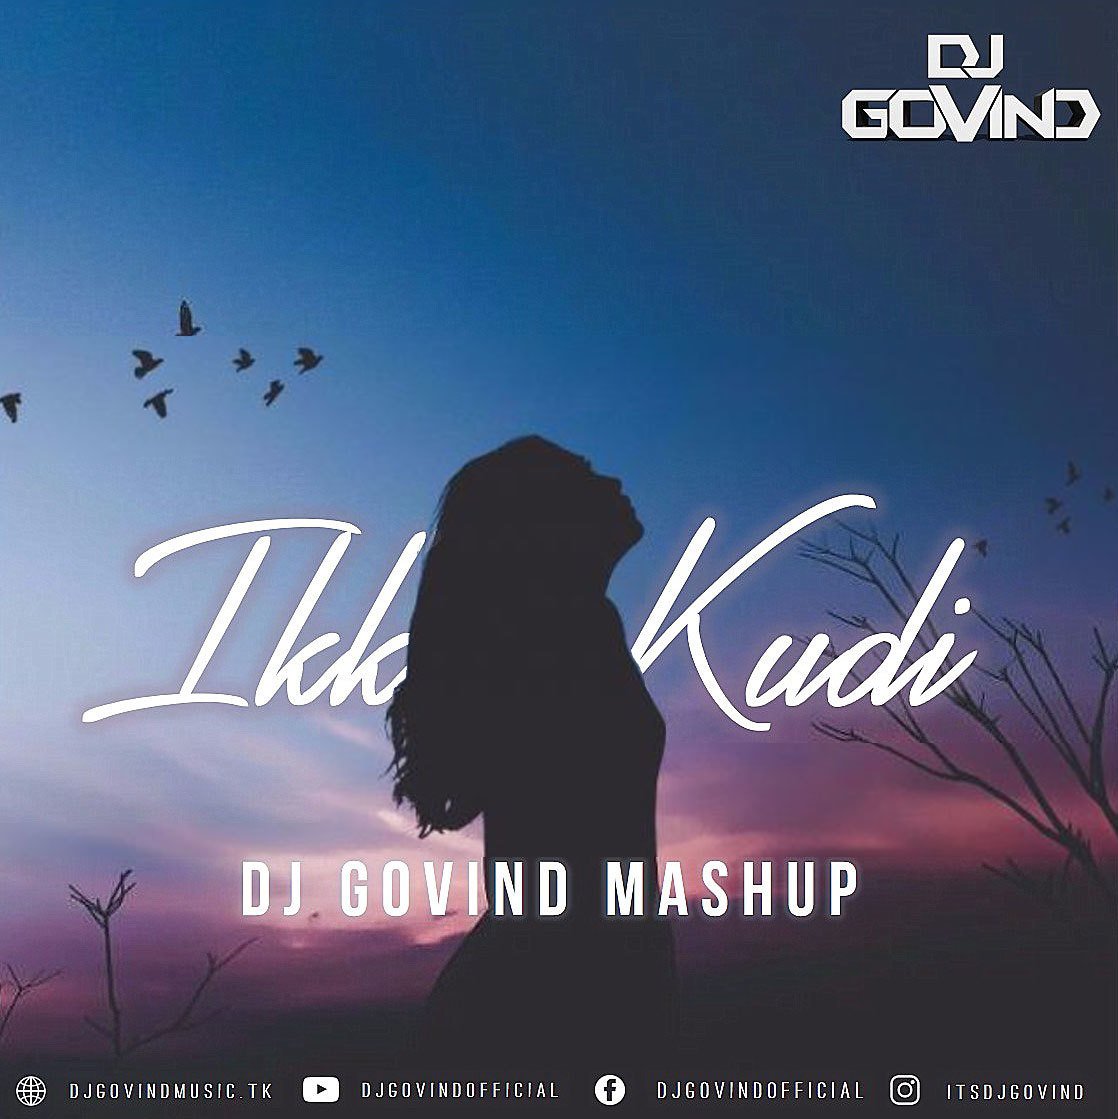 Ikk kudi ( Shahid Mallya ) - DJ Govind Mashup